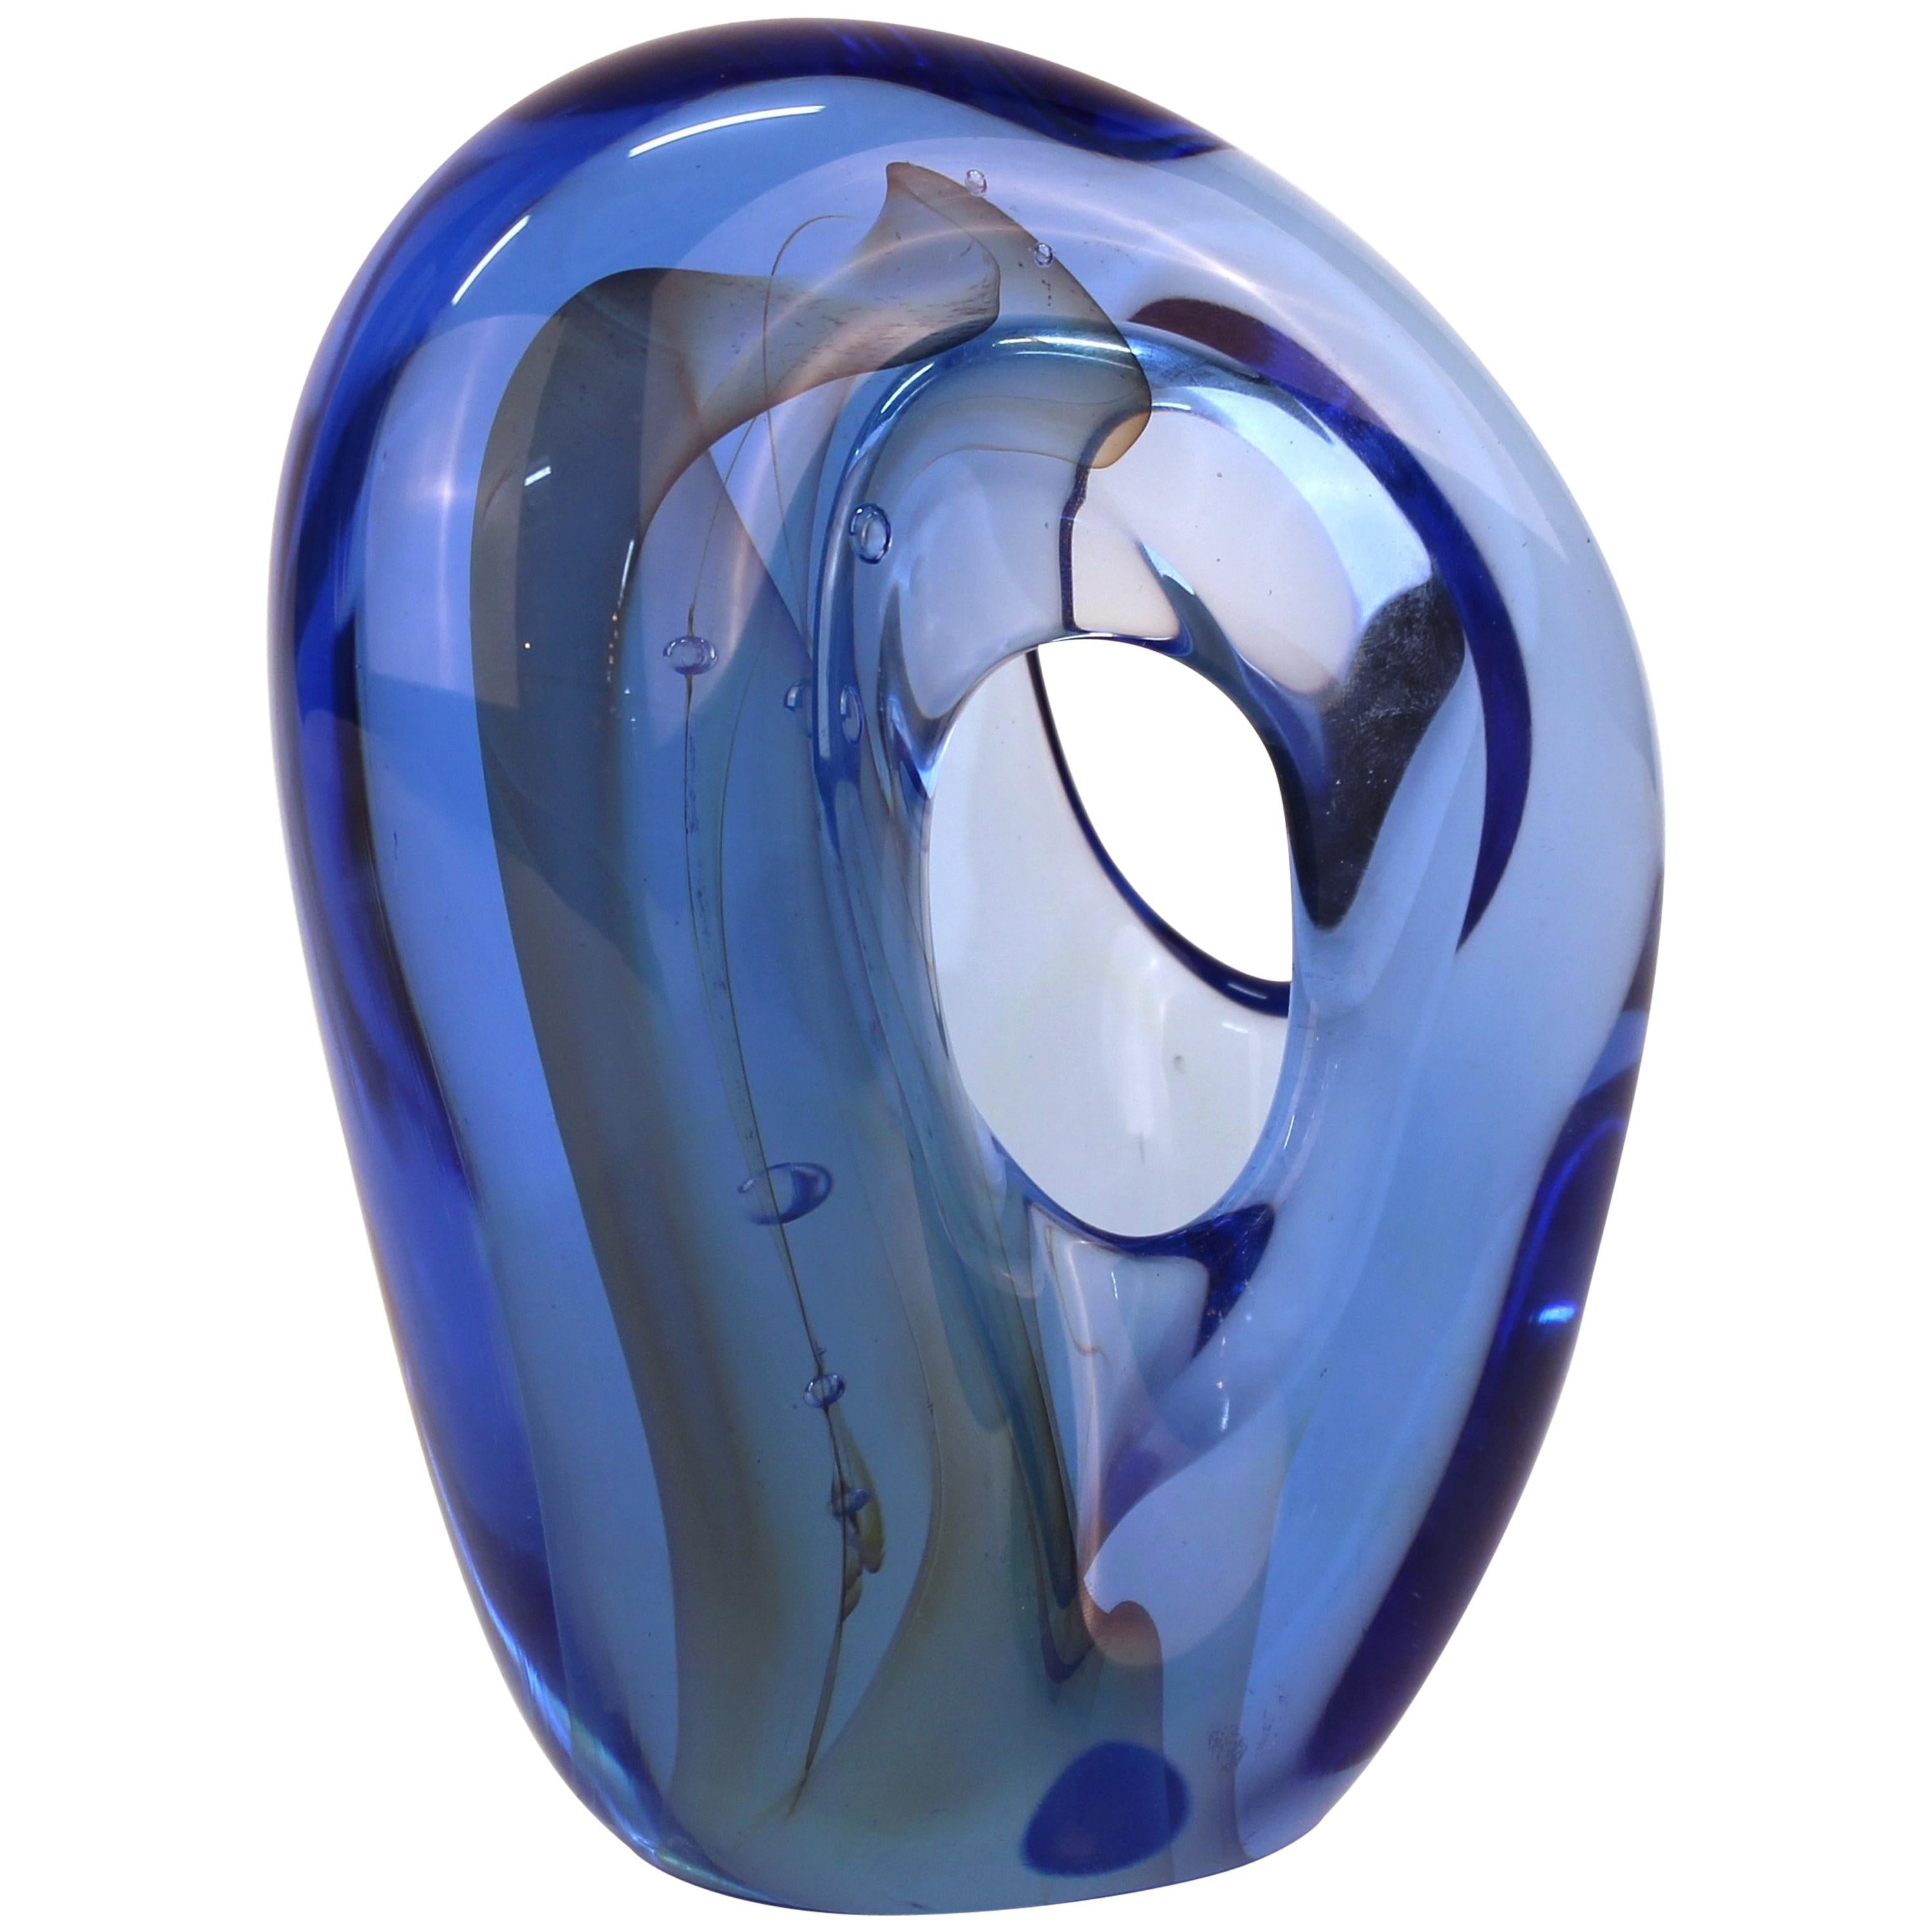 Karnig Dabanian Art Glass Sculpture 